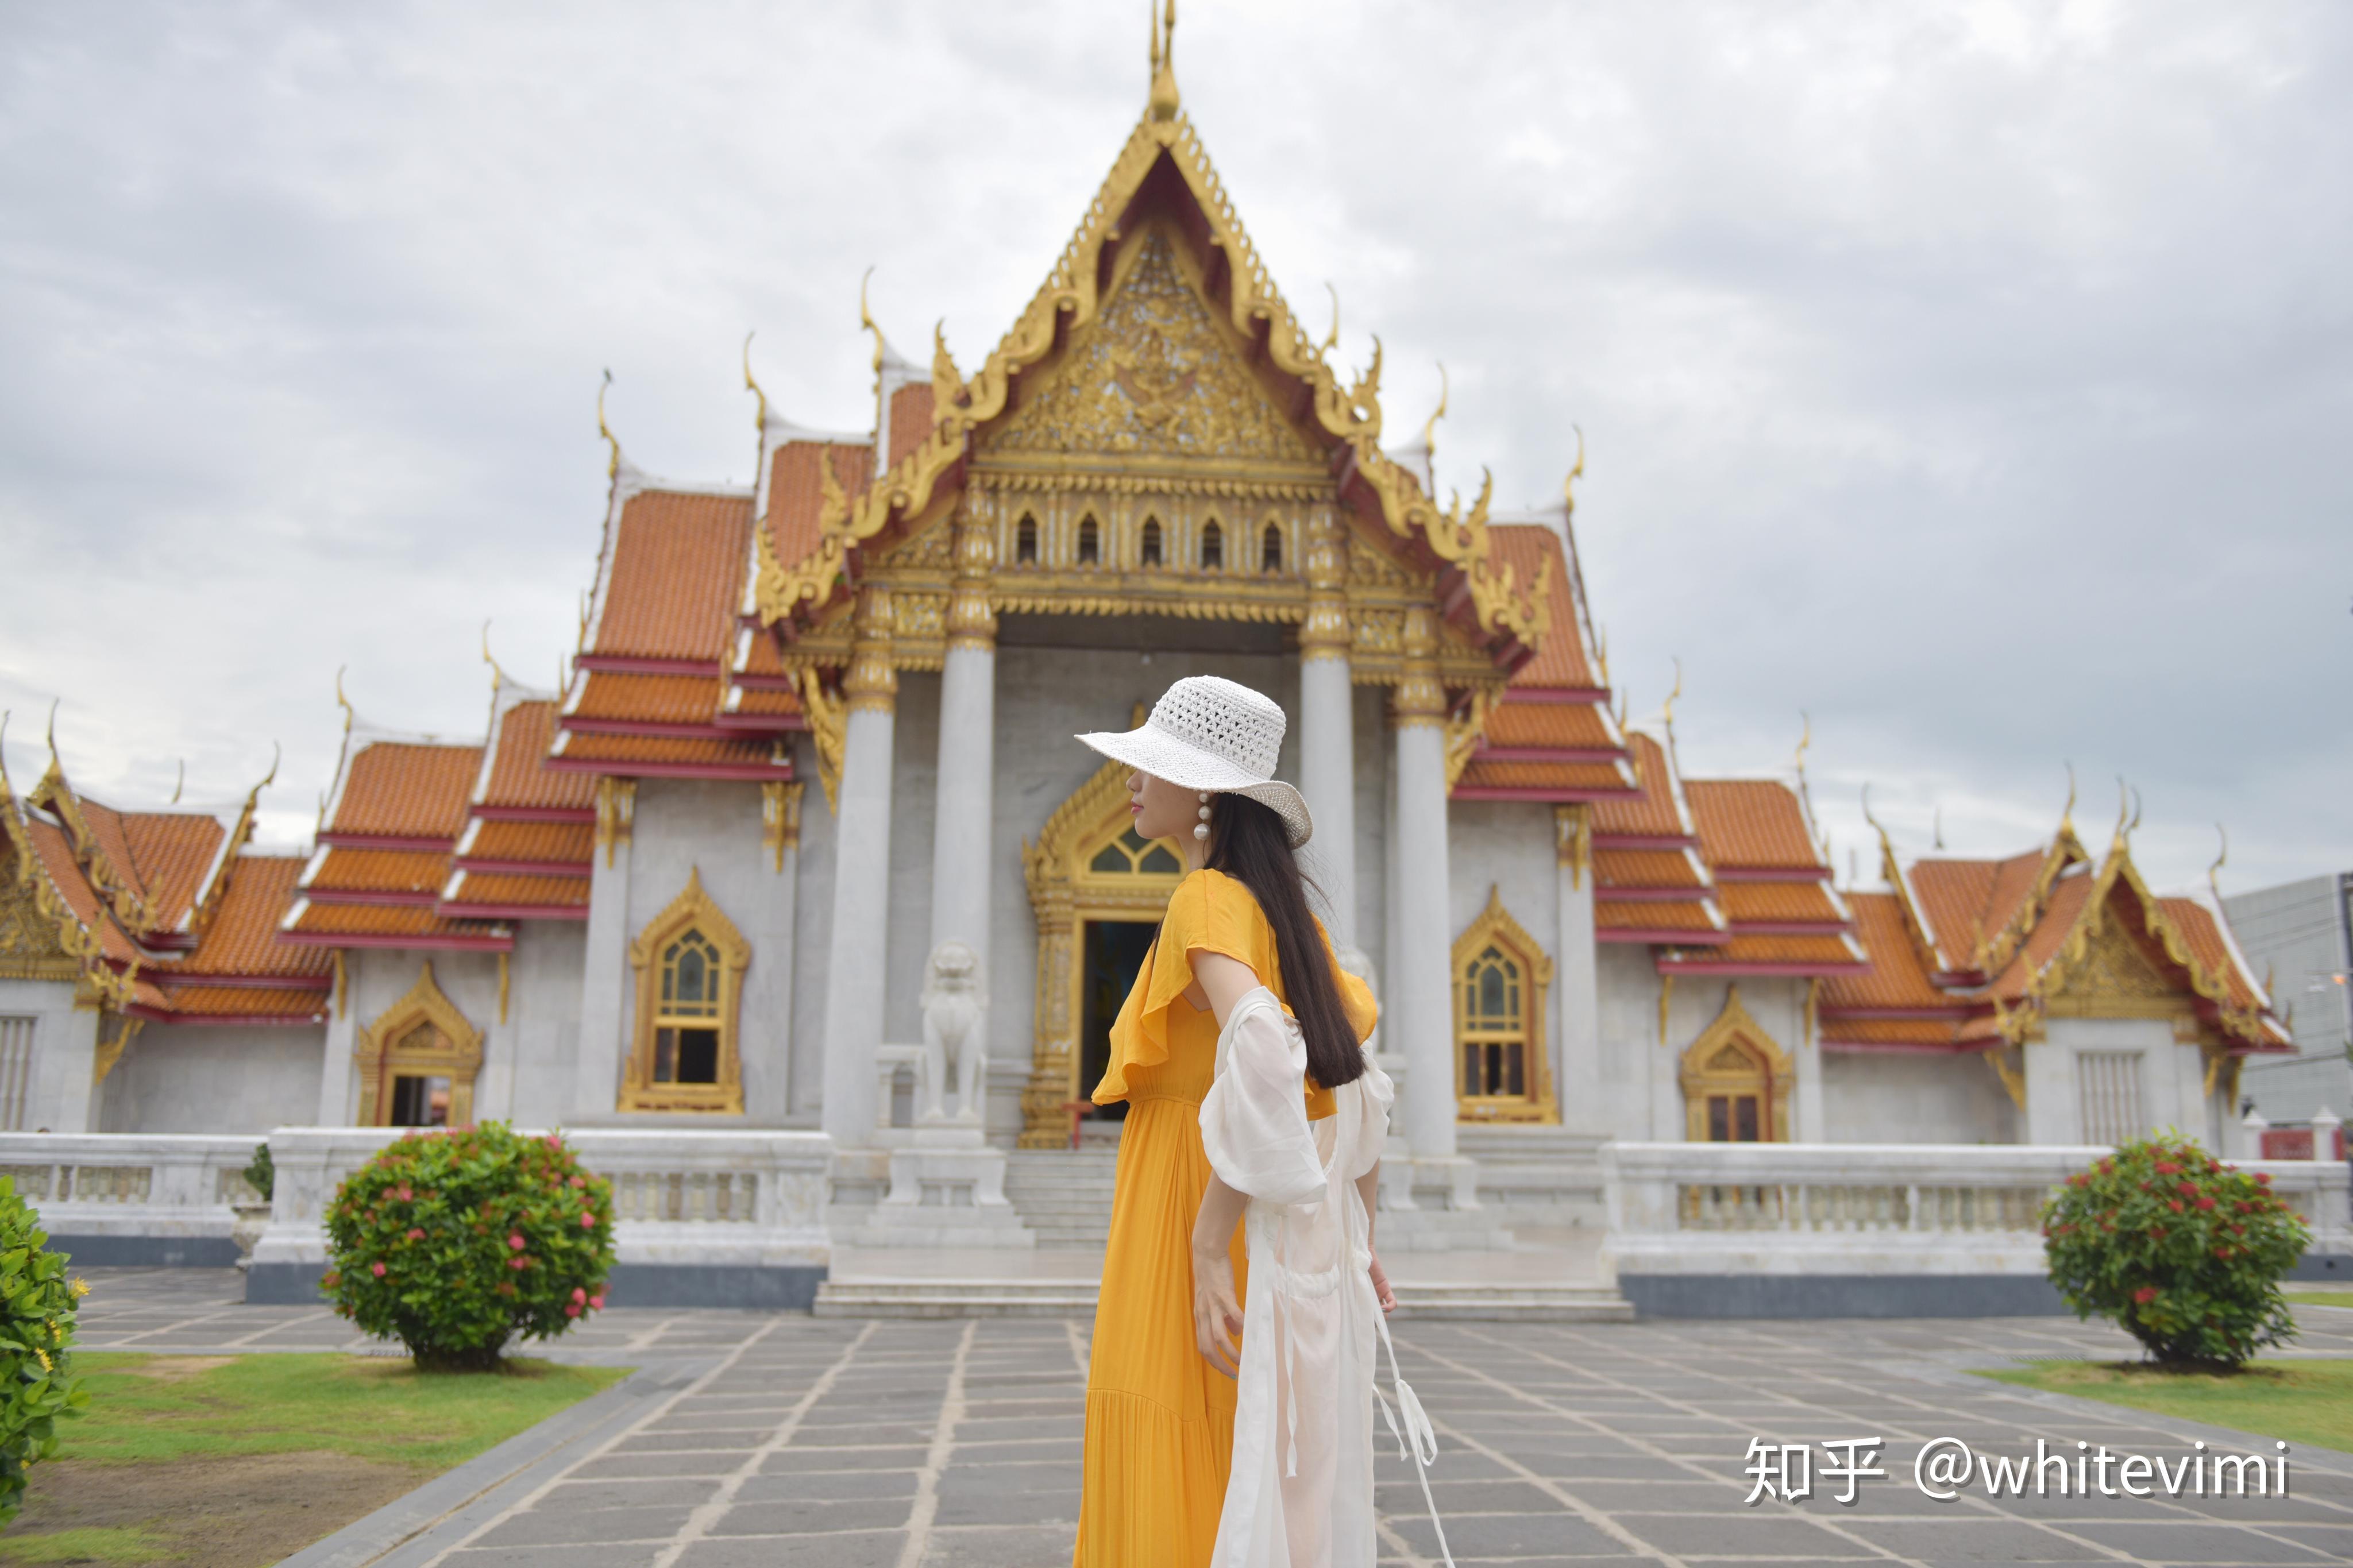 佩带老泰国传统的美丽的泰国妇女给样式穿衣ho 库存图片. 图片 包括有 暹罗语, 镇痛药, 相当, 室外 - 113414743